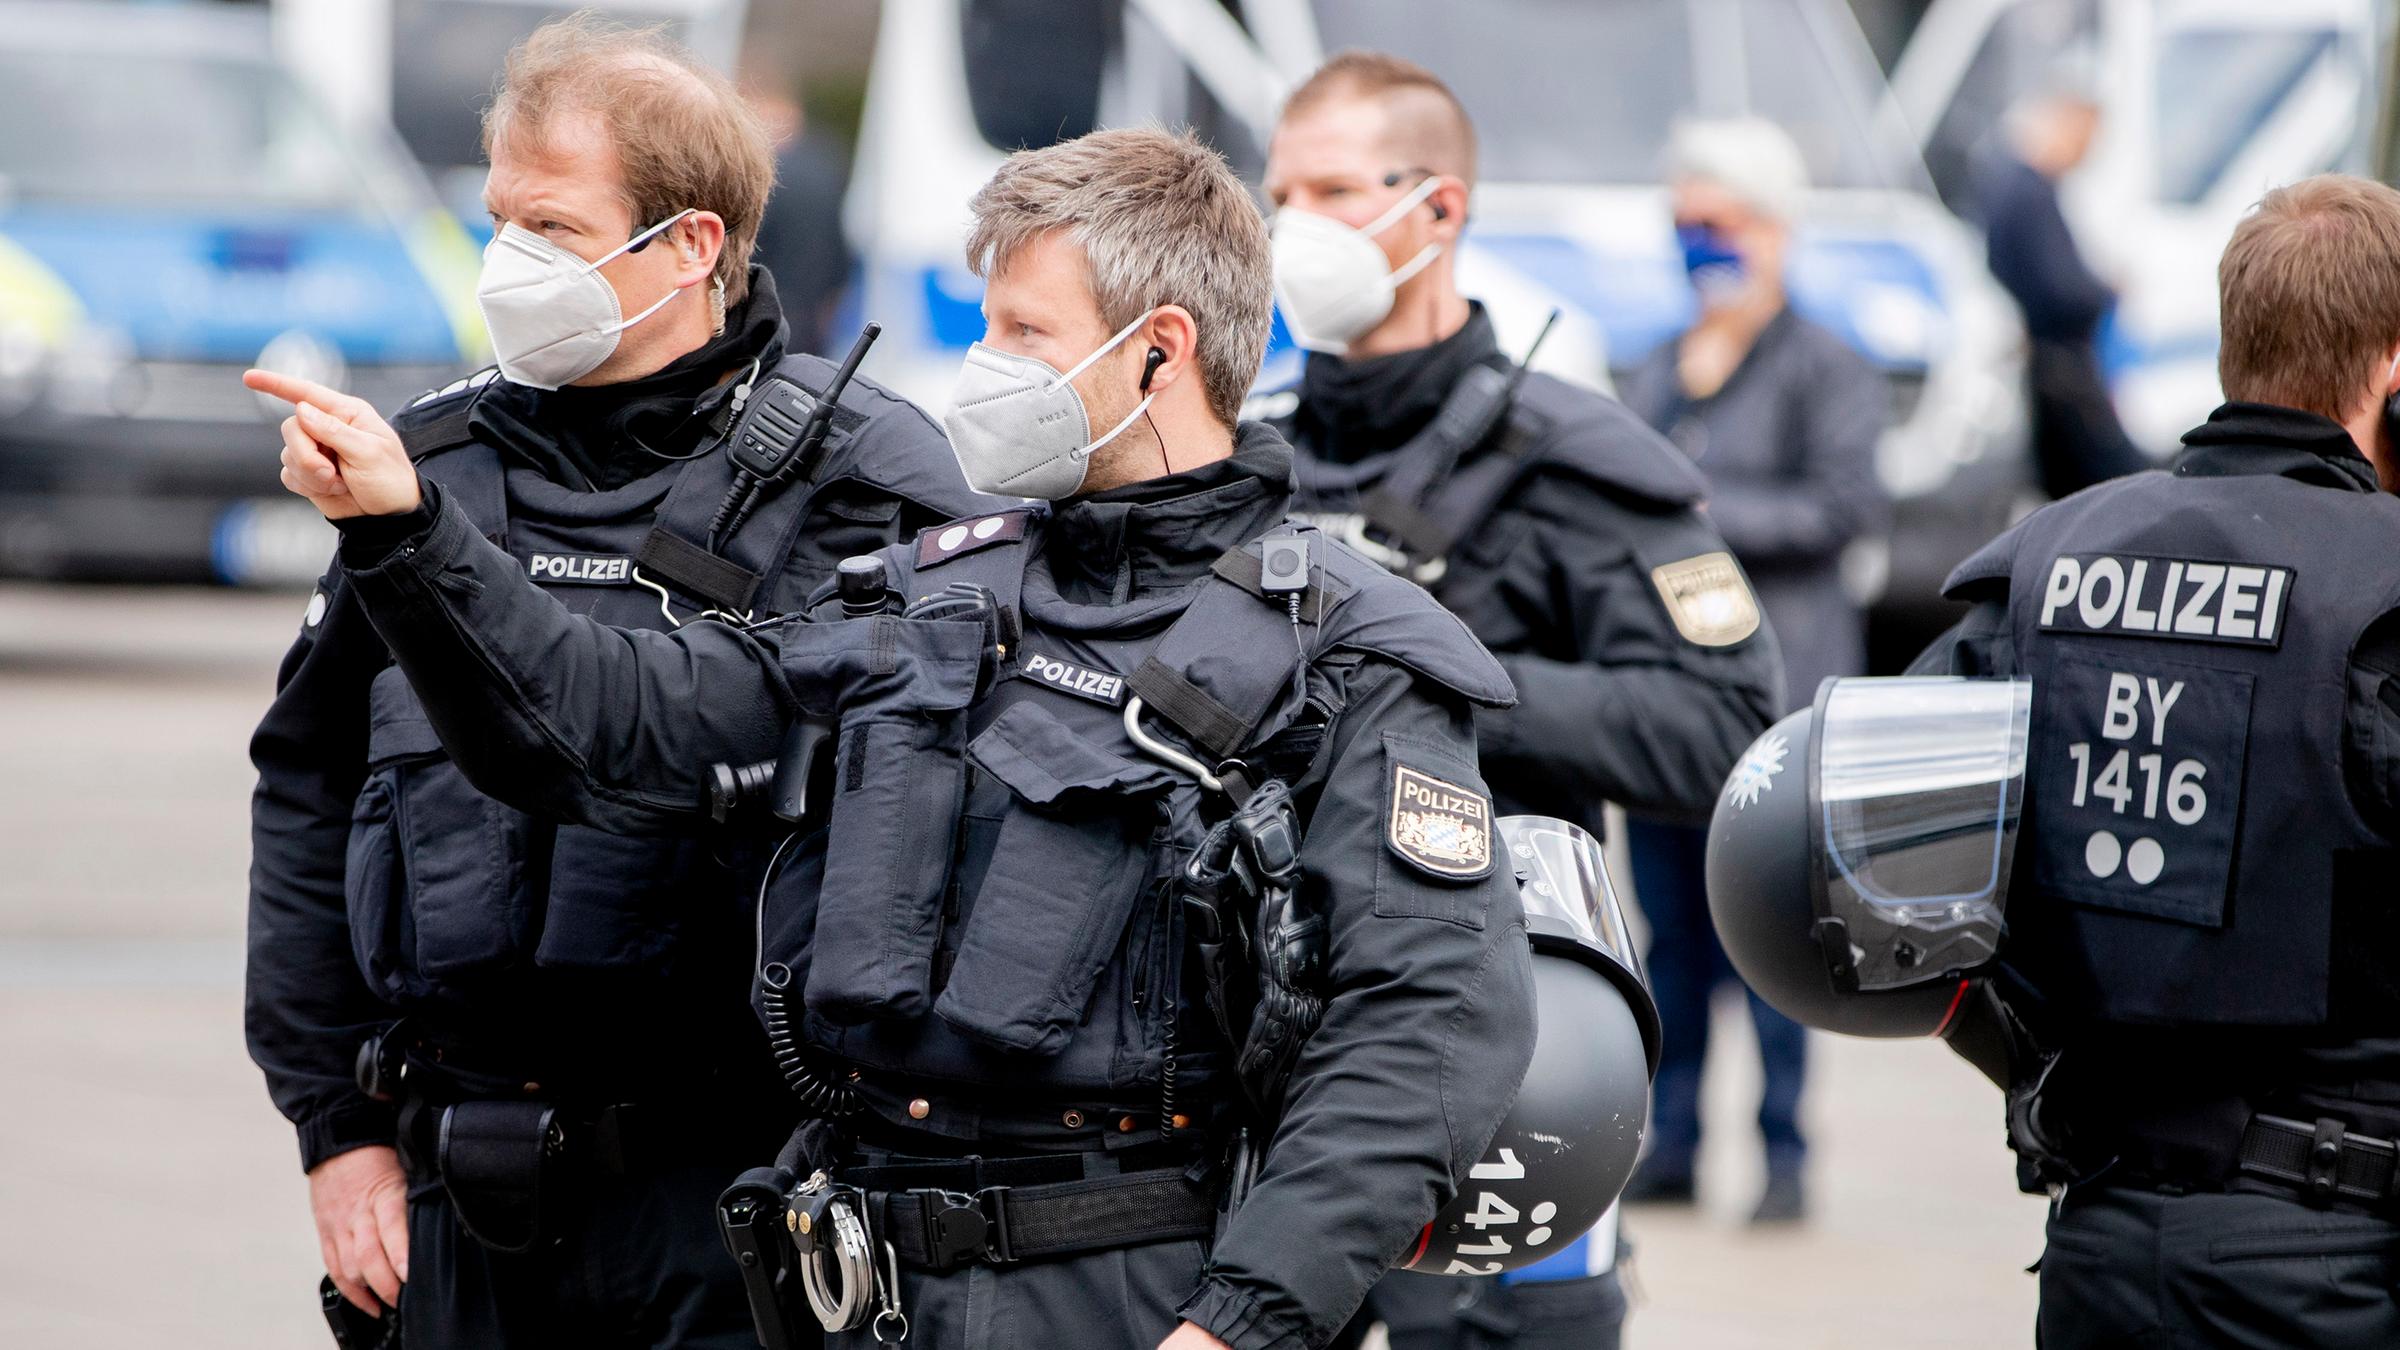 التطرف اليميني يتزايد بين قوات الشرطة الألمانية